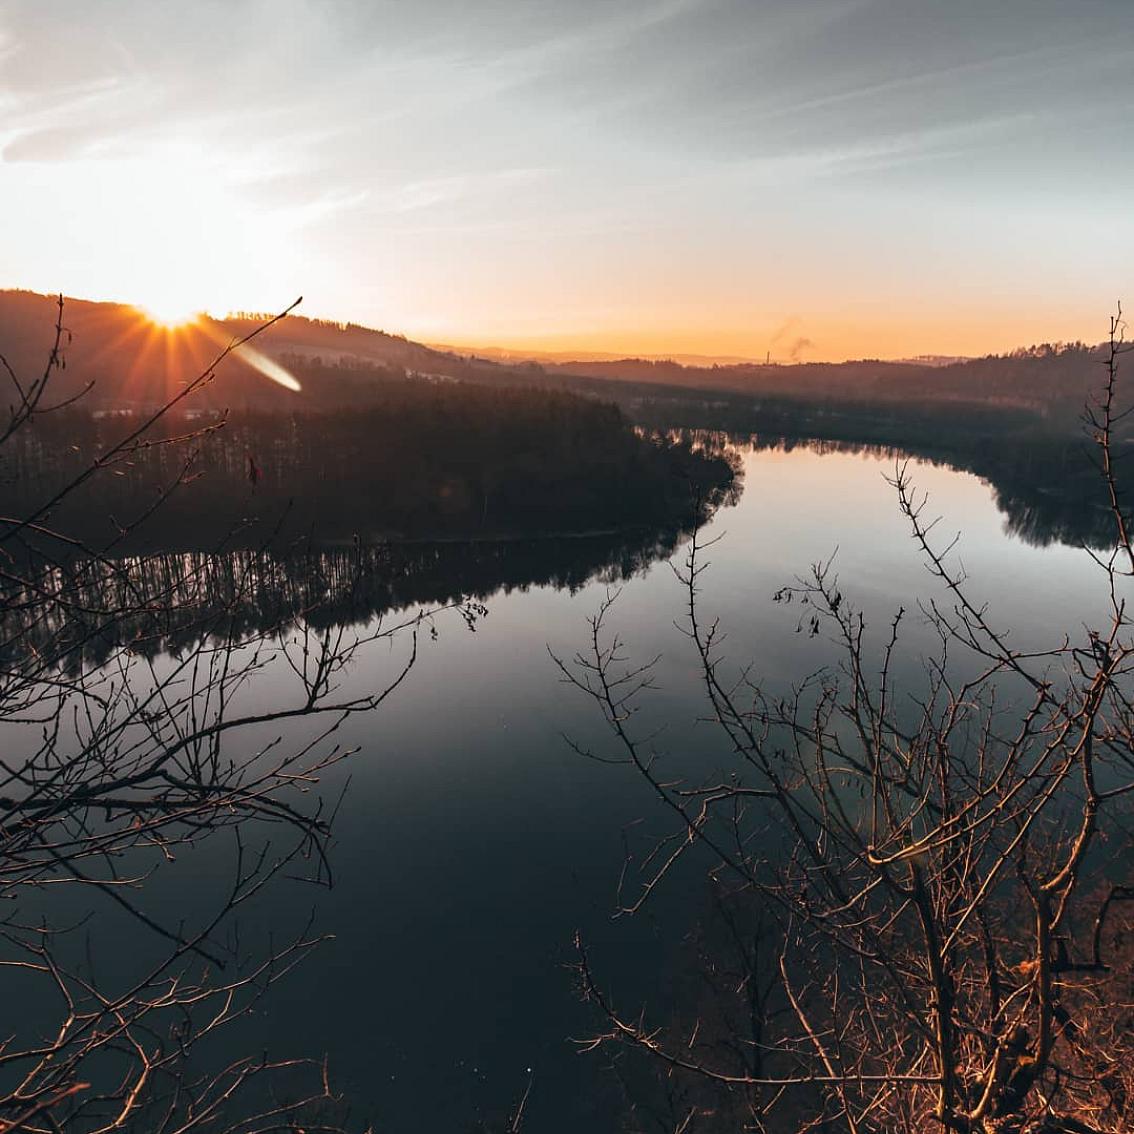 Jižní Čechy on Instagram: “Východ slunce na soutoku řek Vltava a Lužnice je určitě předzvěst krásného dne. 📷@screechcz #jiznicechy #southbohemia #czechrepublic…”